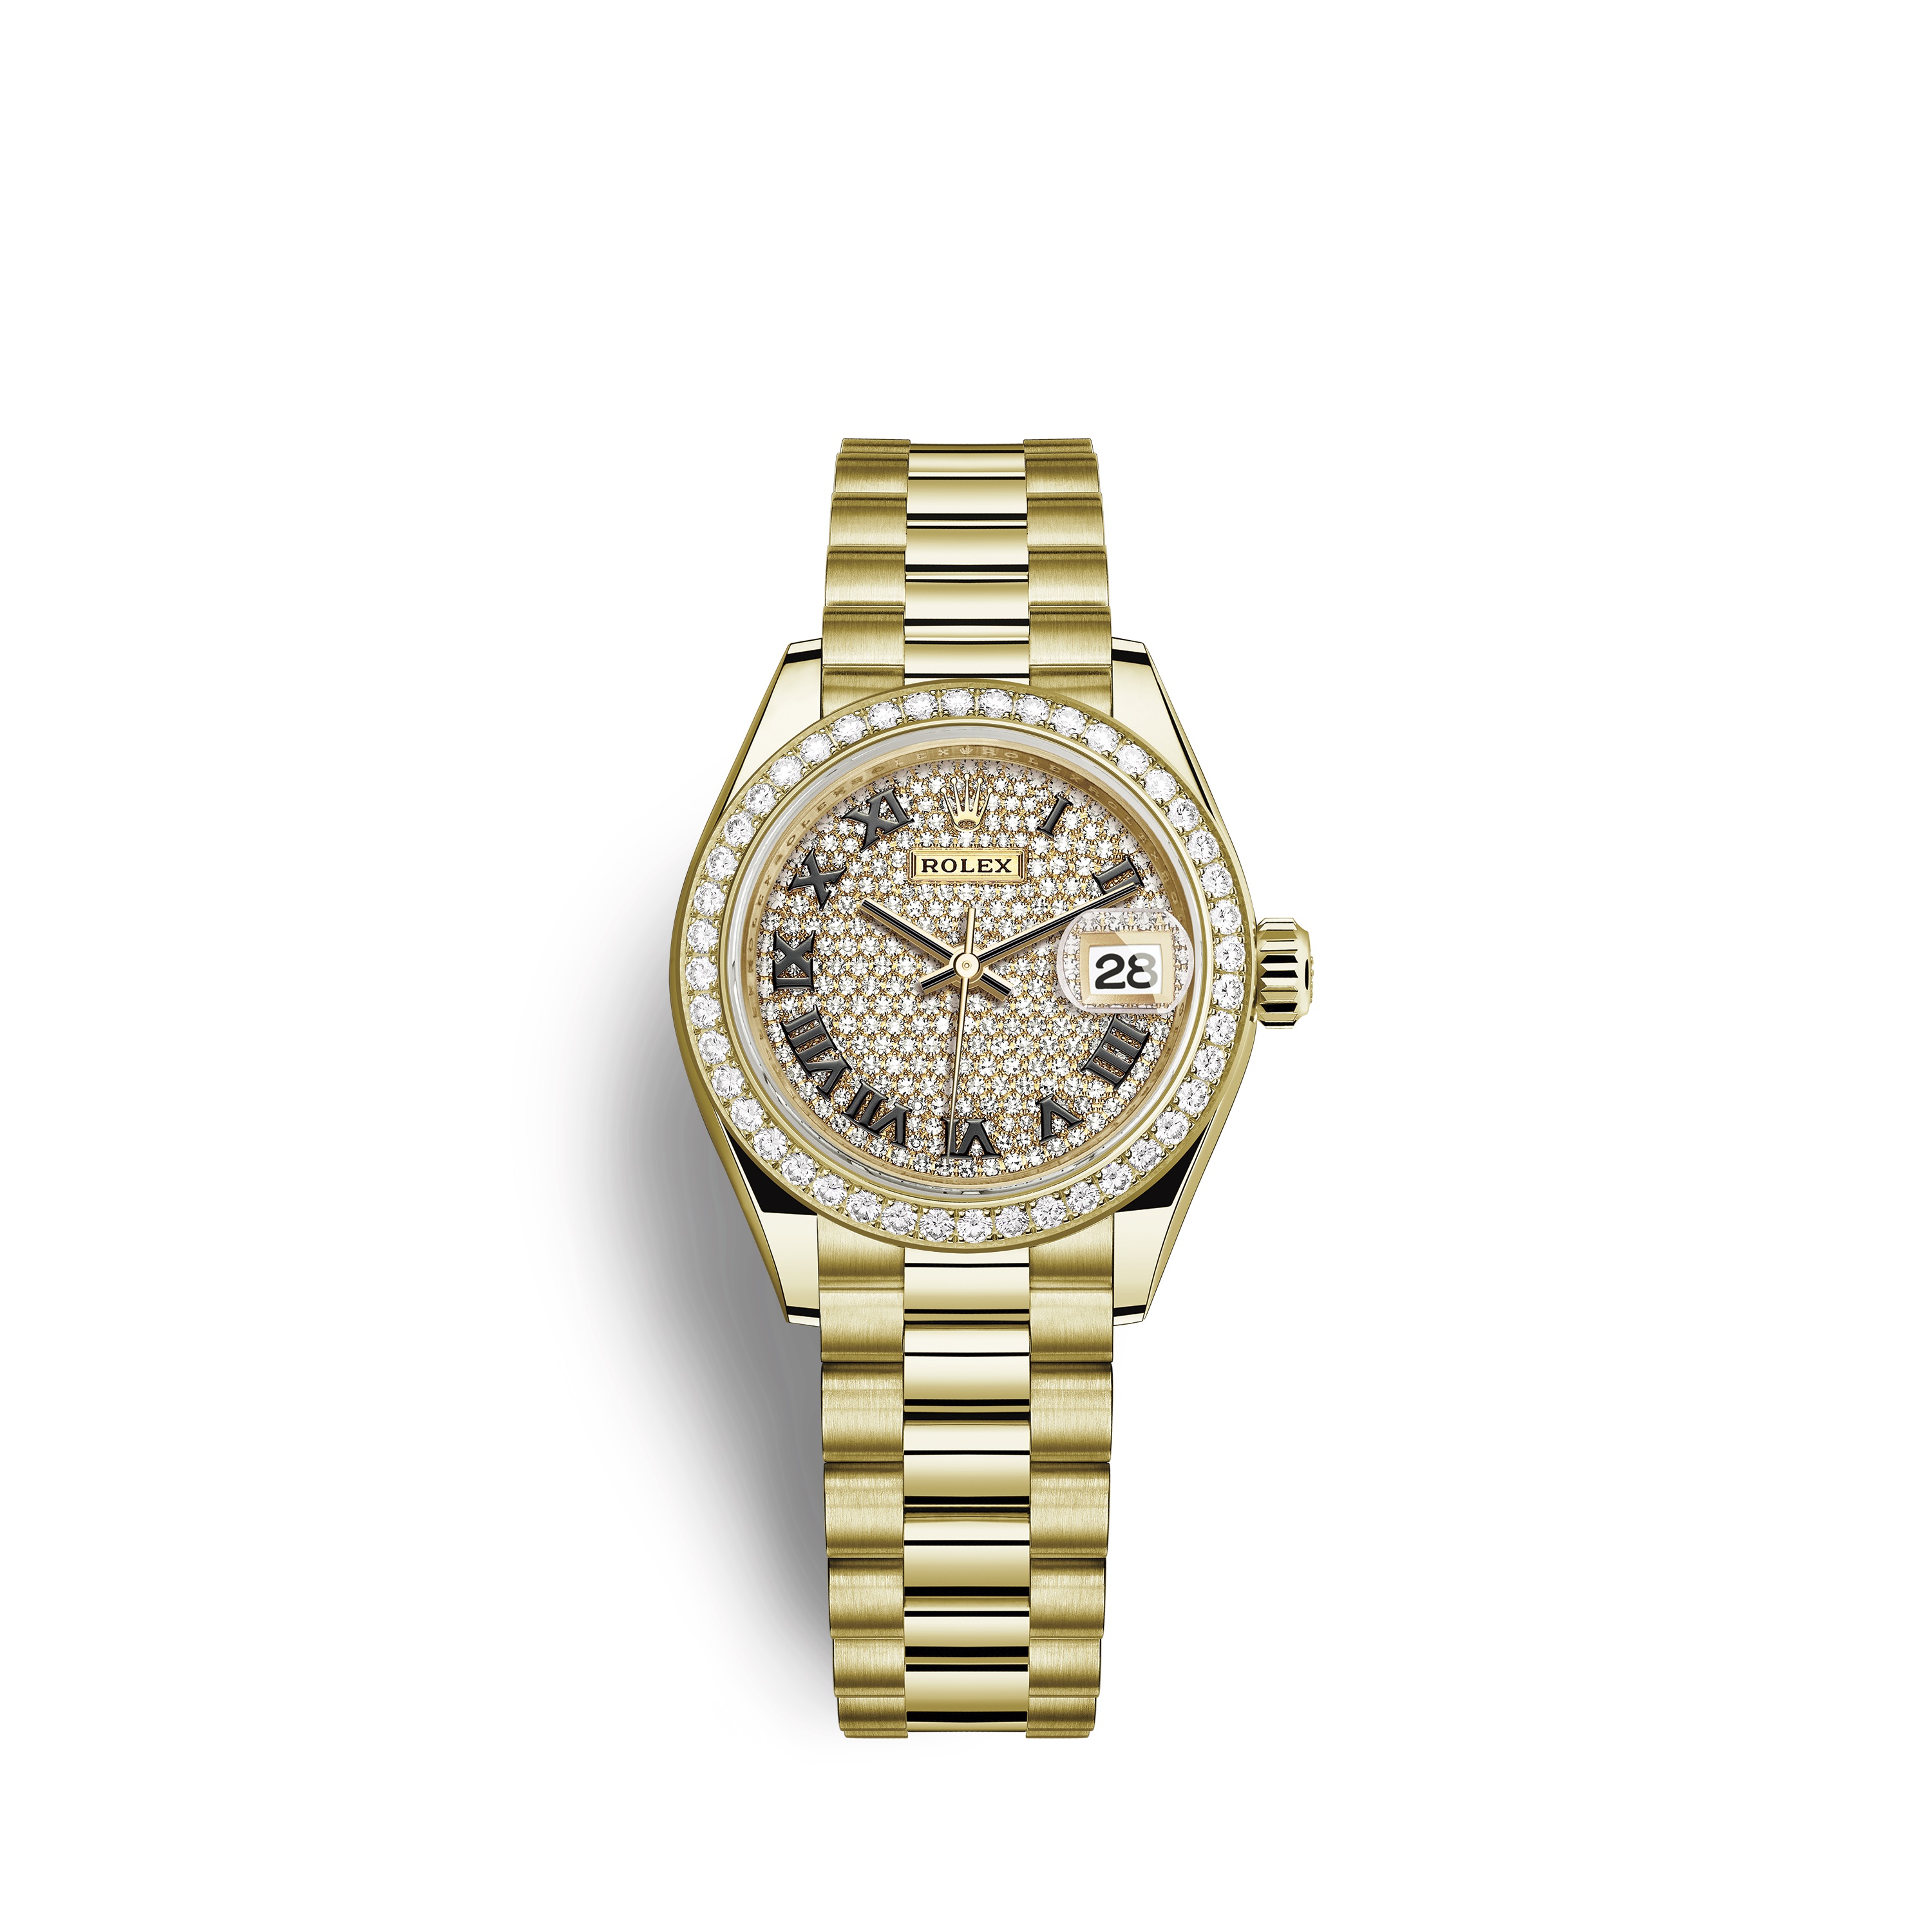 Lady-Datejust 28 279138RBR Gold & Diamonds Watch (White)